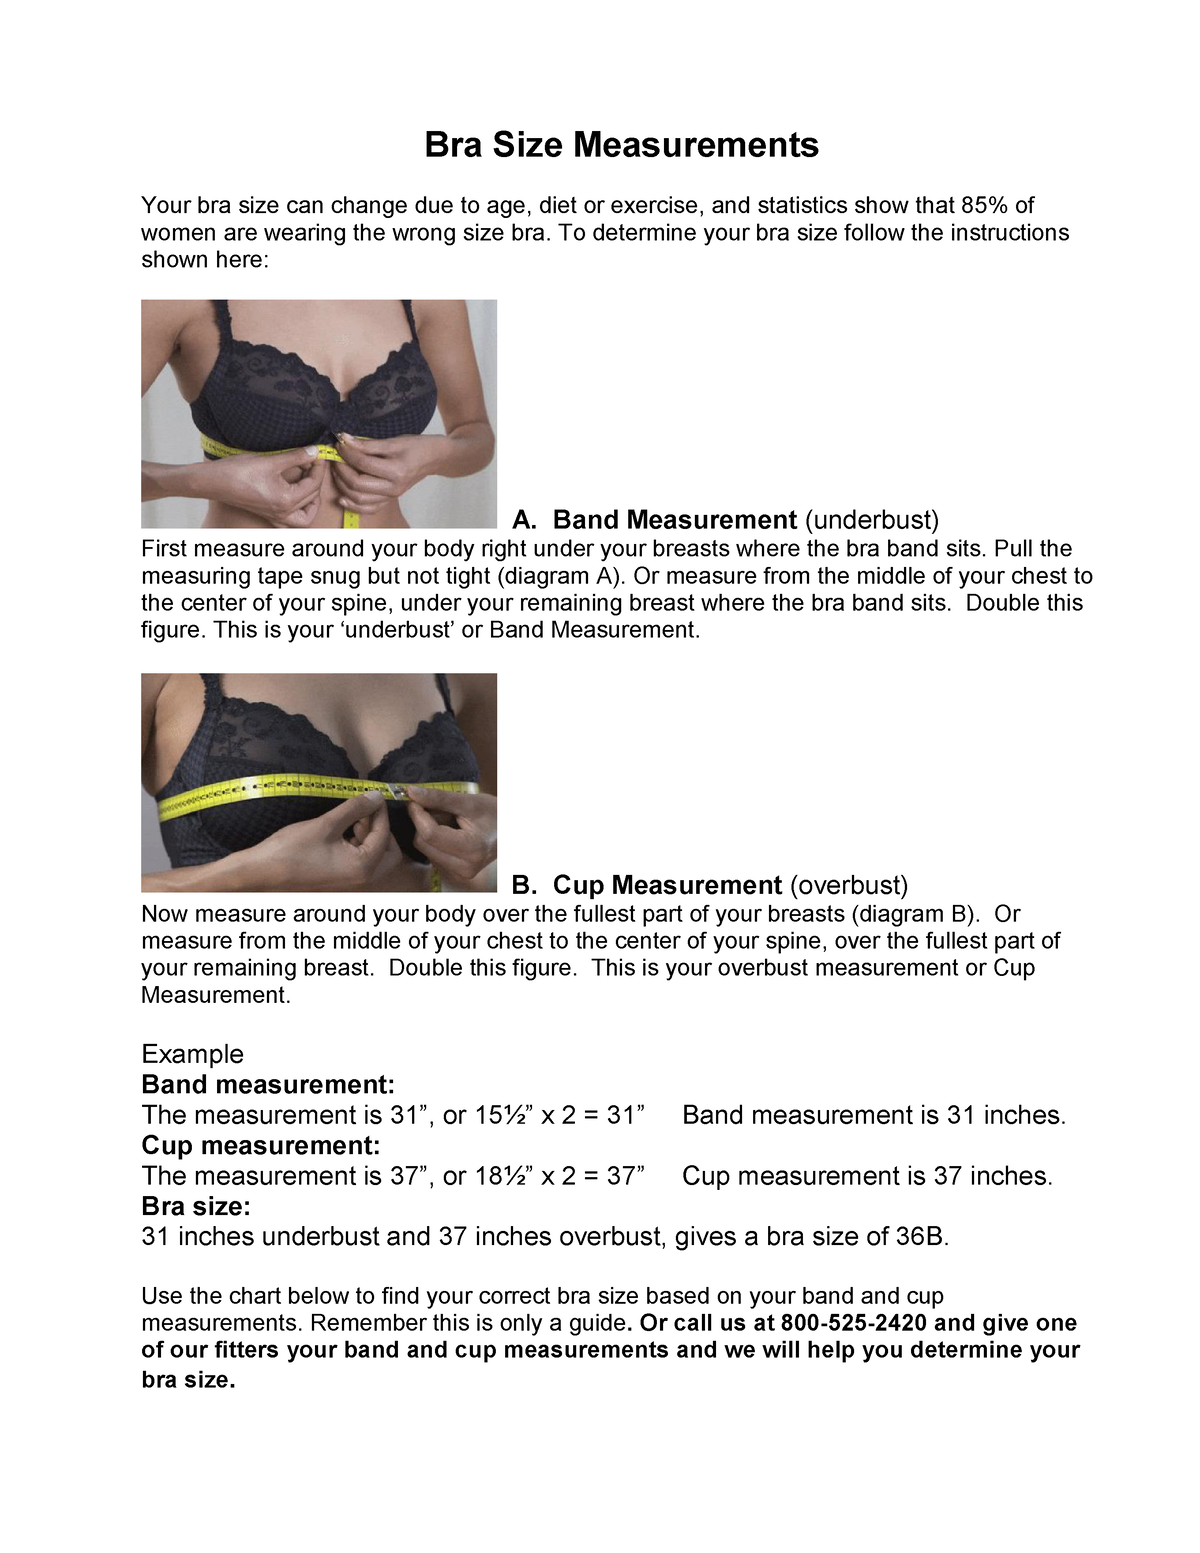 Bra Size Measurements PDF jajdjakdhskjx - Bra Size Measurements Your bra  size can change due to age, - Studocu